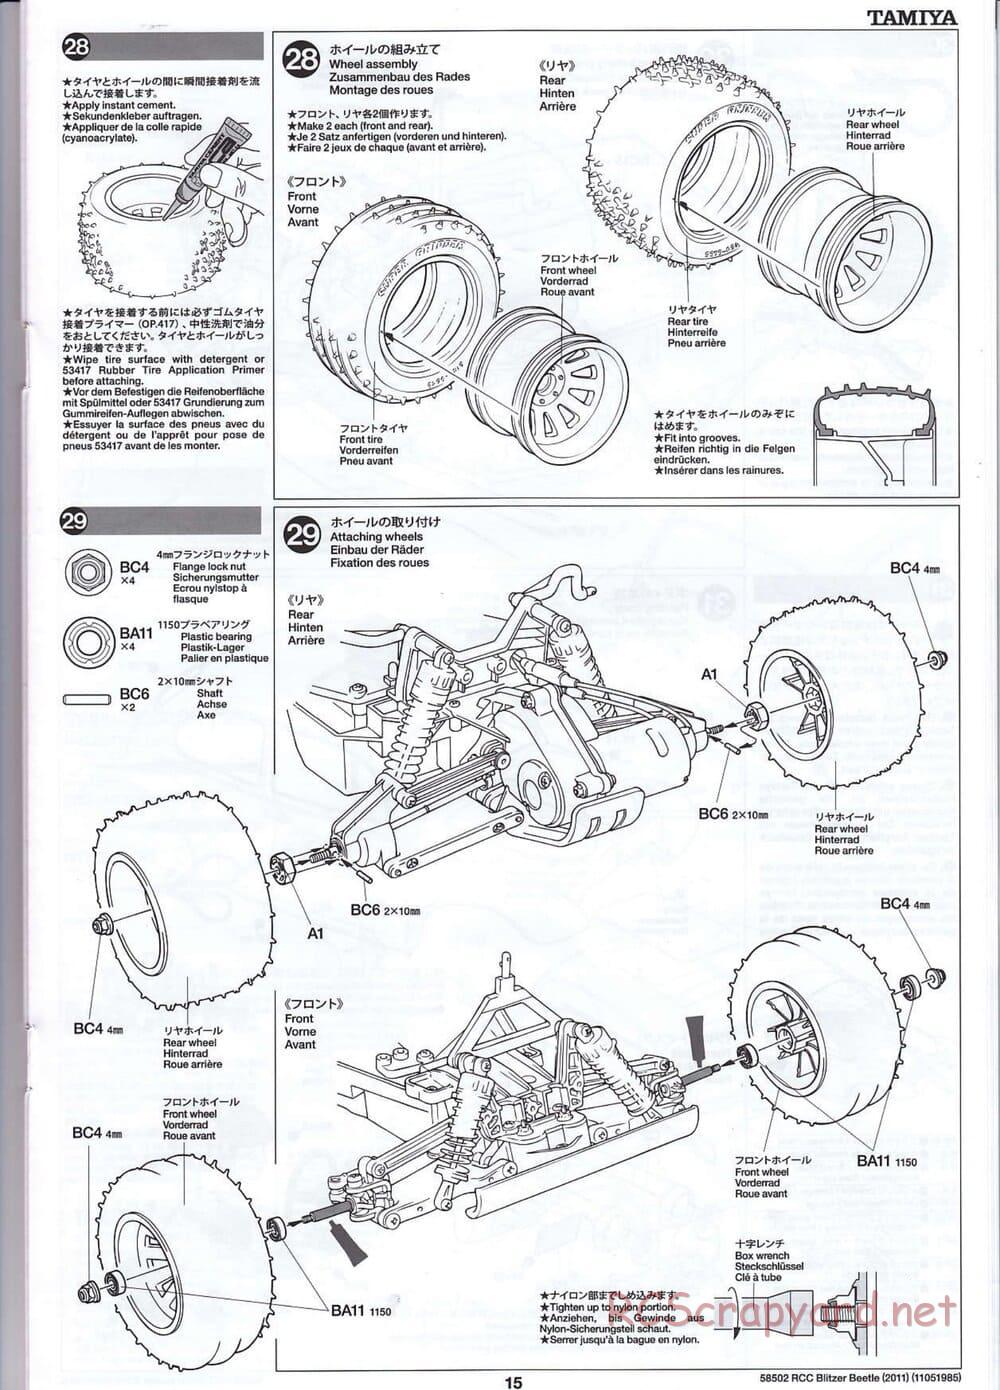 Tamiya - Blitzer Beetle 2011 - FAL Chassis - Manual - Page 15